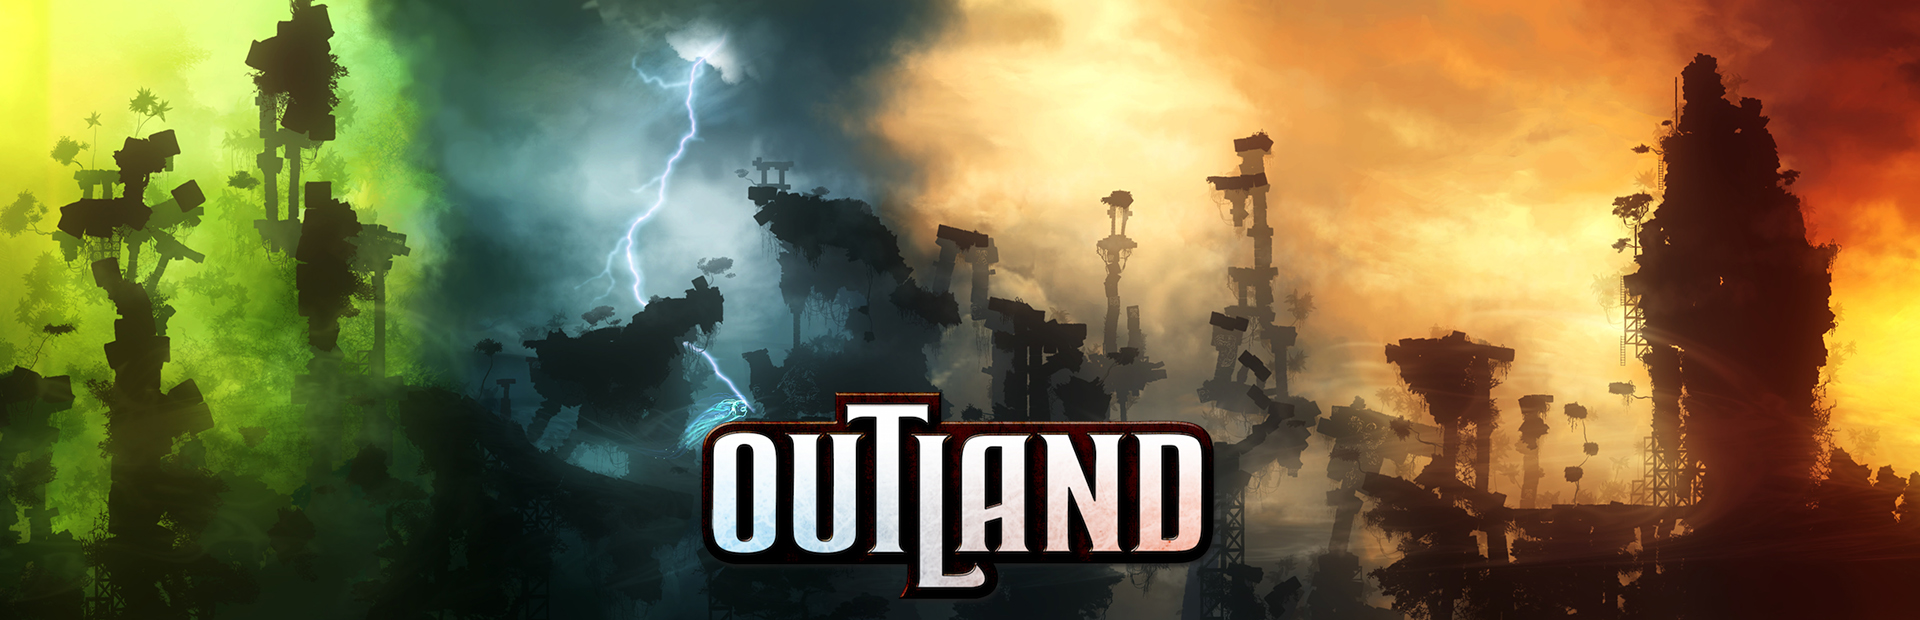 دانلود بازی Outland برای PC | گیمباتو